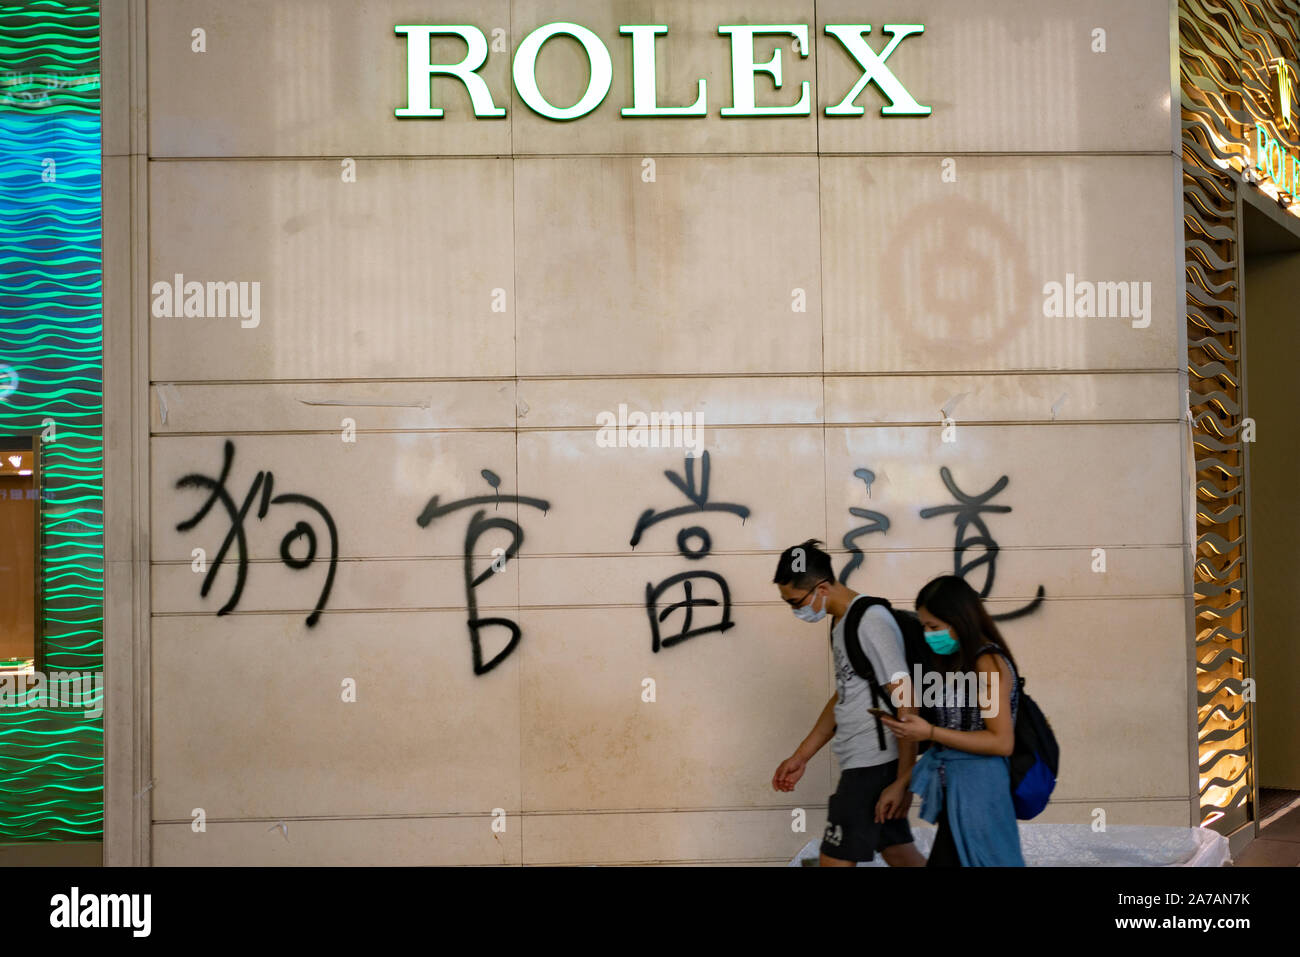 Pro-democrazia graffiti spruzzato sulla parete della Rolex shop in Hong Kong 2019. Foto Stock